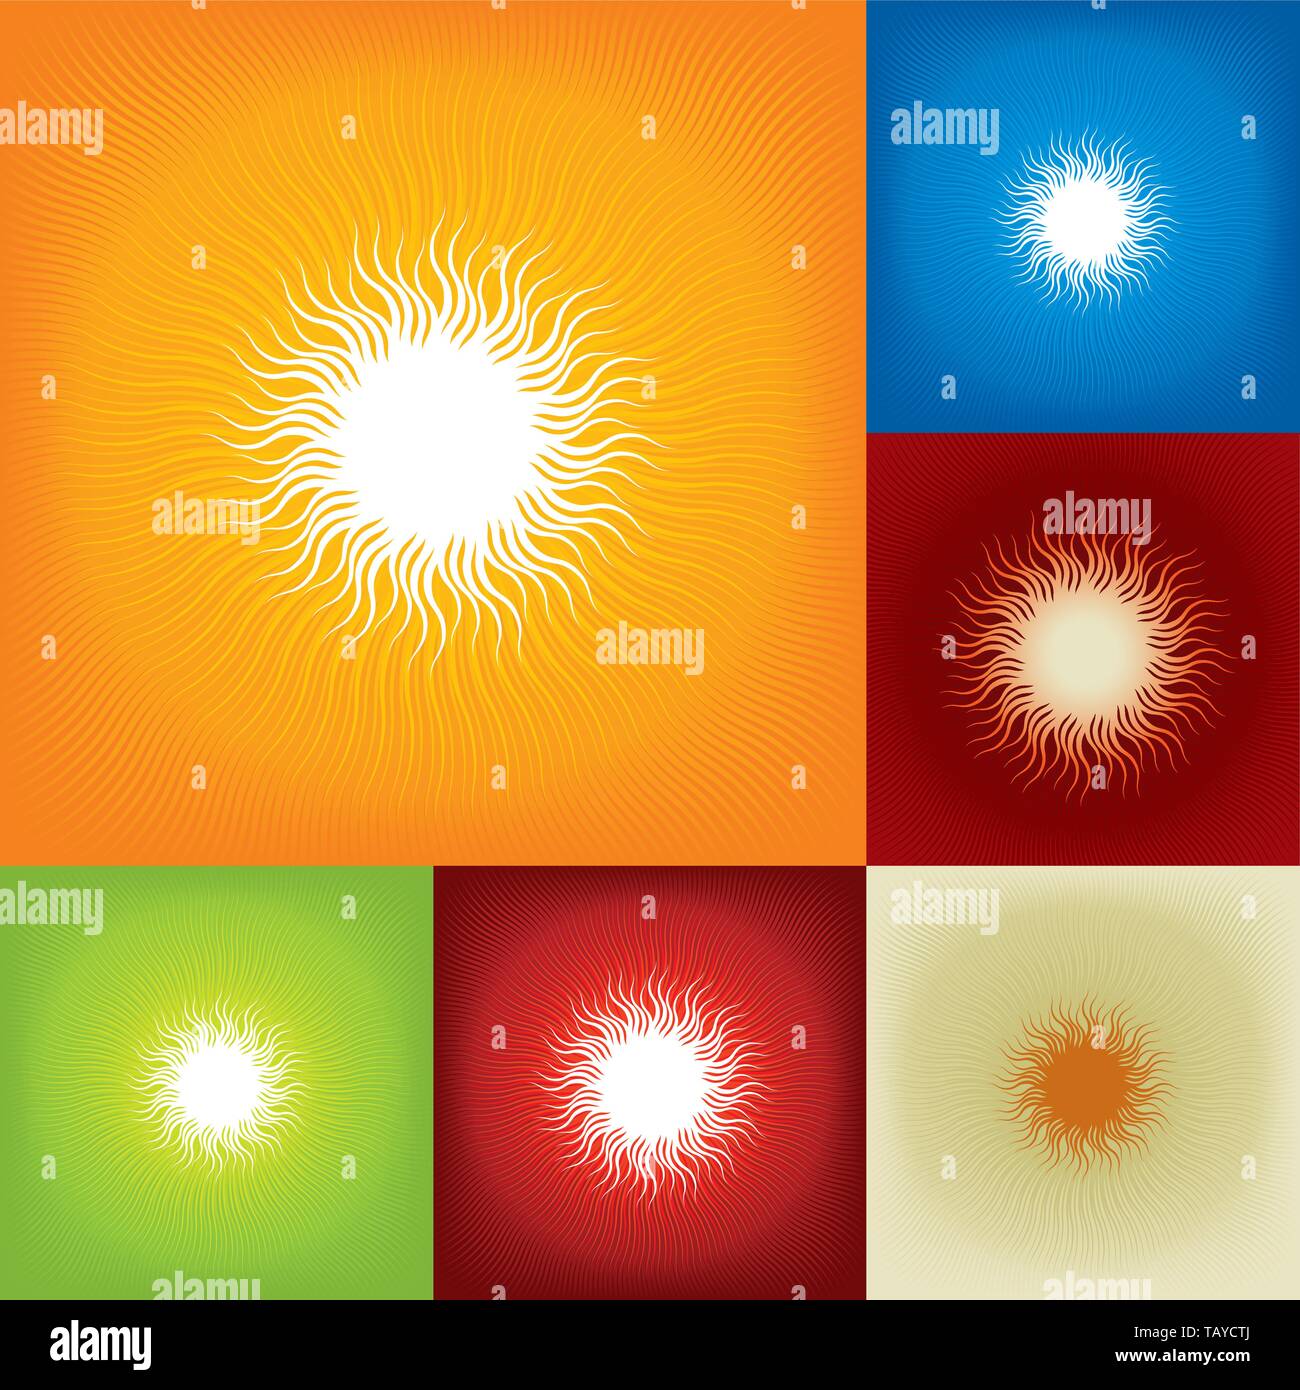 Illustrazione Vettoriale. Sullo sfondo di una geometrial sunbeam texture in arancione e bianco. Illustrazione Vettoriale